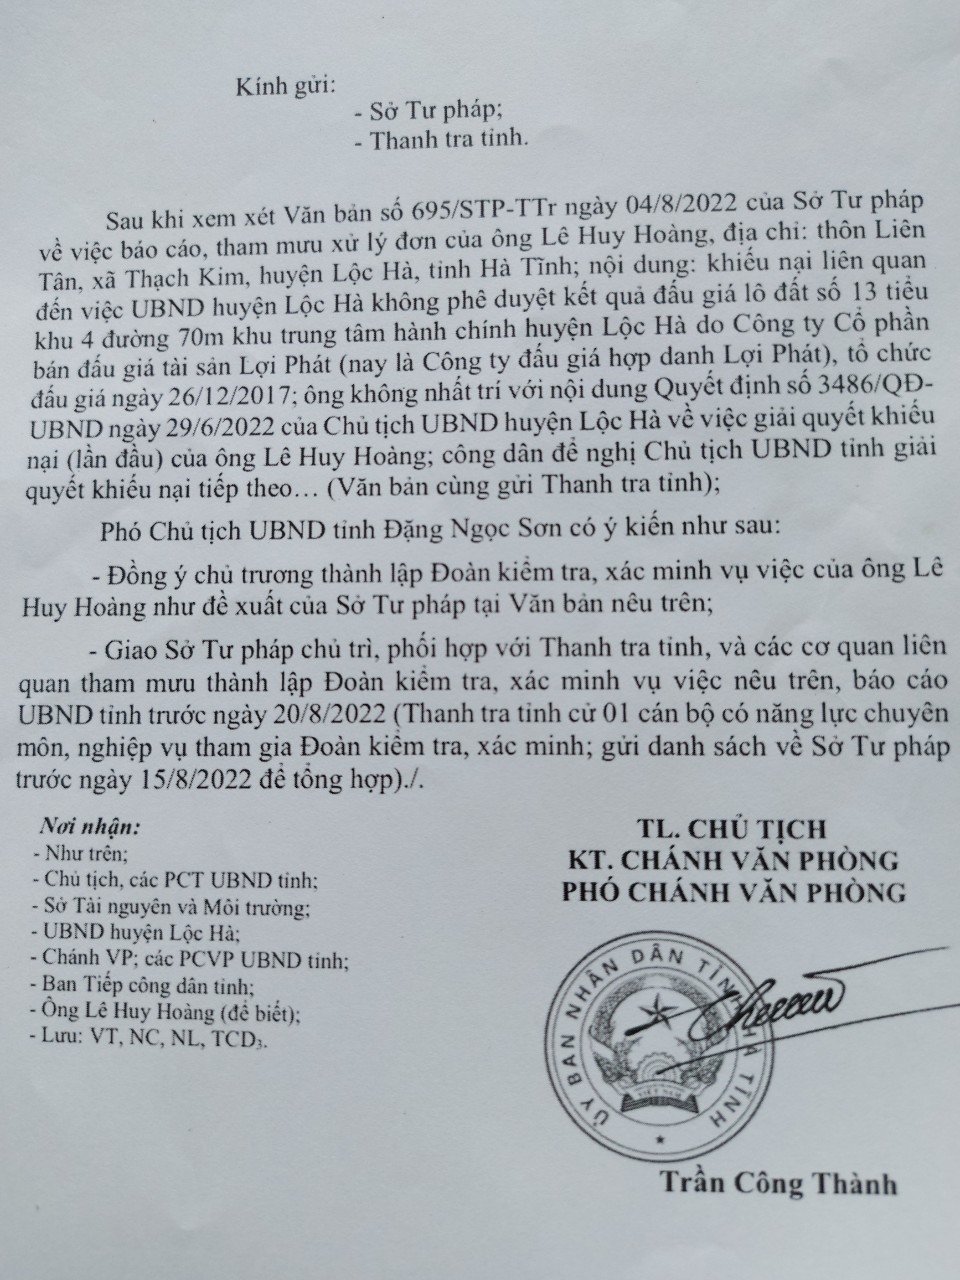 UBND huyện Lộc Hà vẫn giữ quan điểm không phê duyệt trúng đấu giá lô đất số 13 cho ông Hoàng. Ảnh: TT.